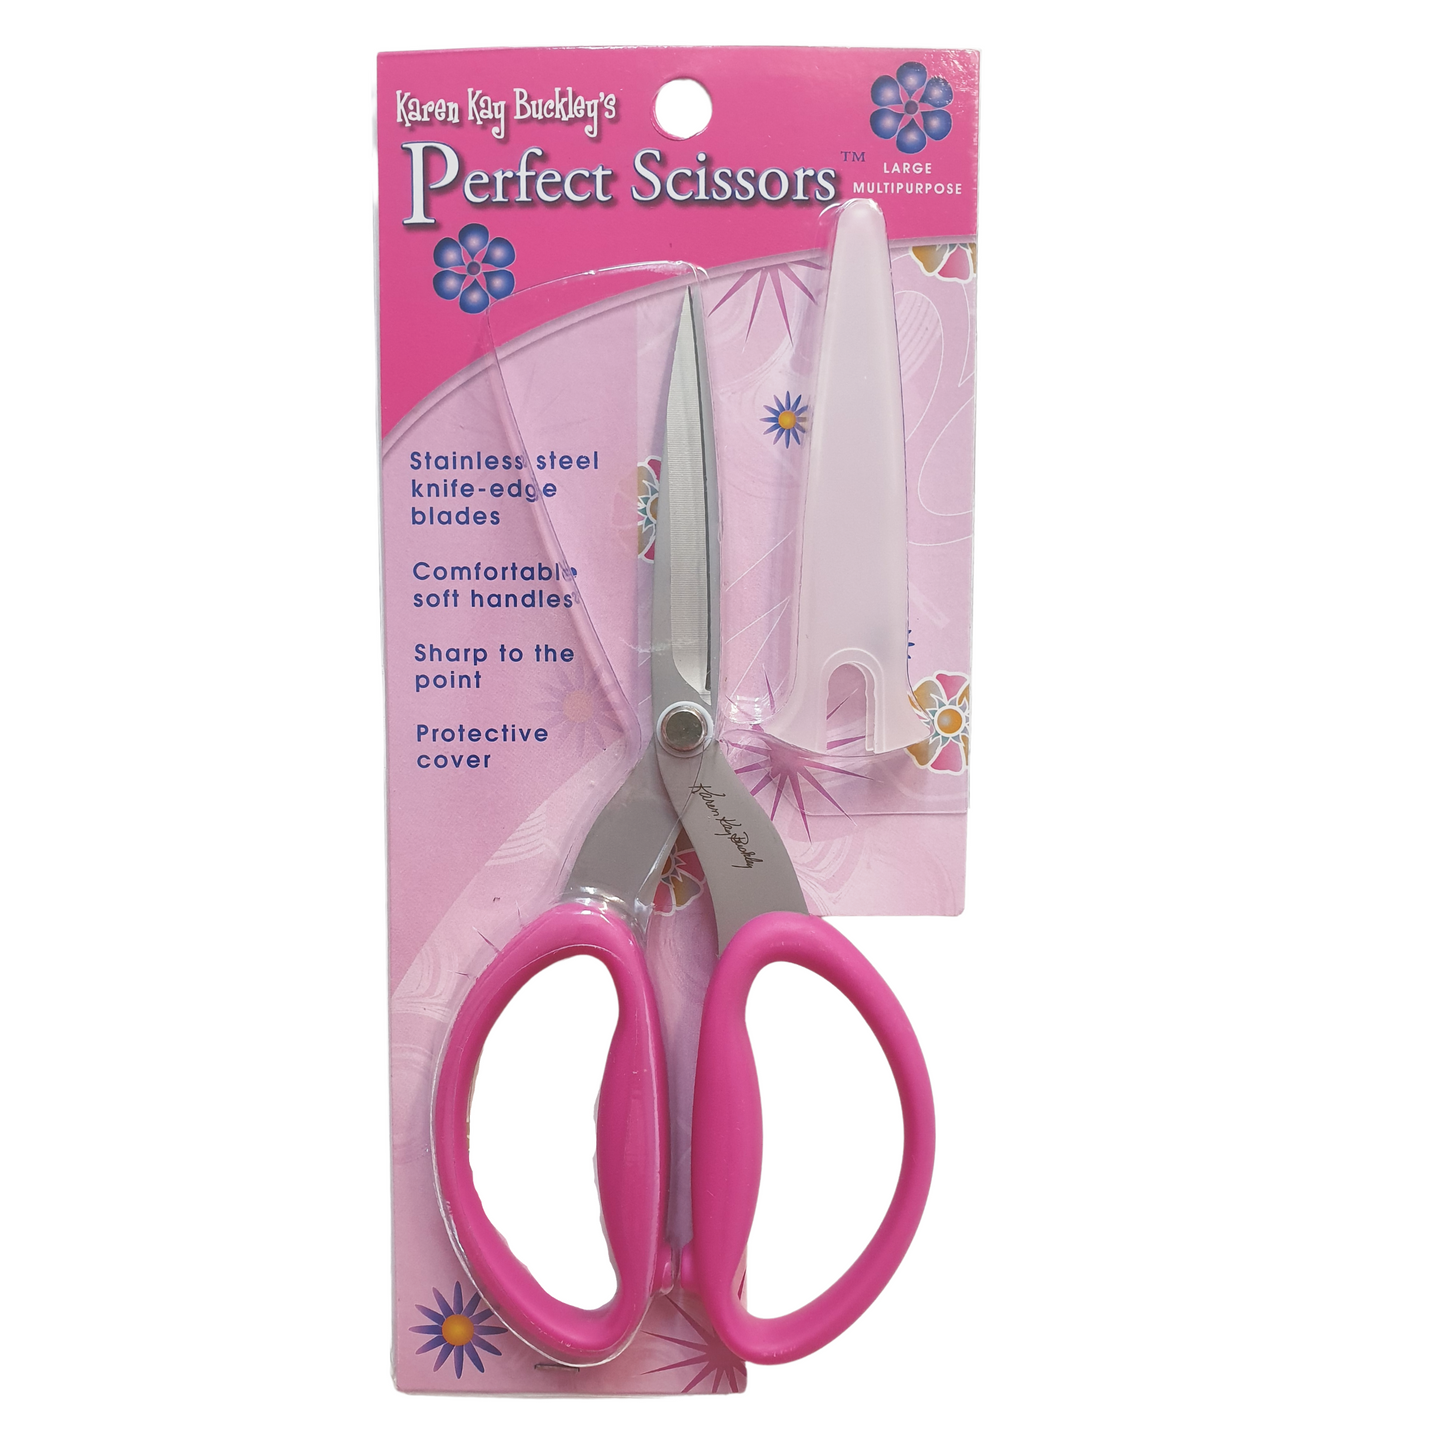 Karen Kay Buckley Scissors 6" Perfect Multi-purpose Scissors Medium